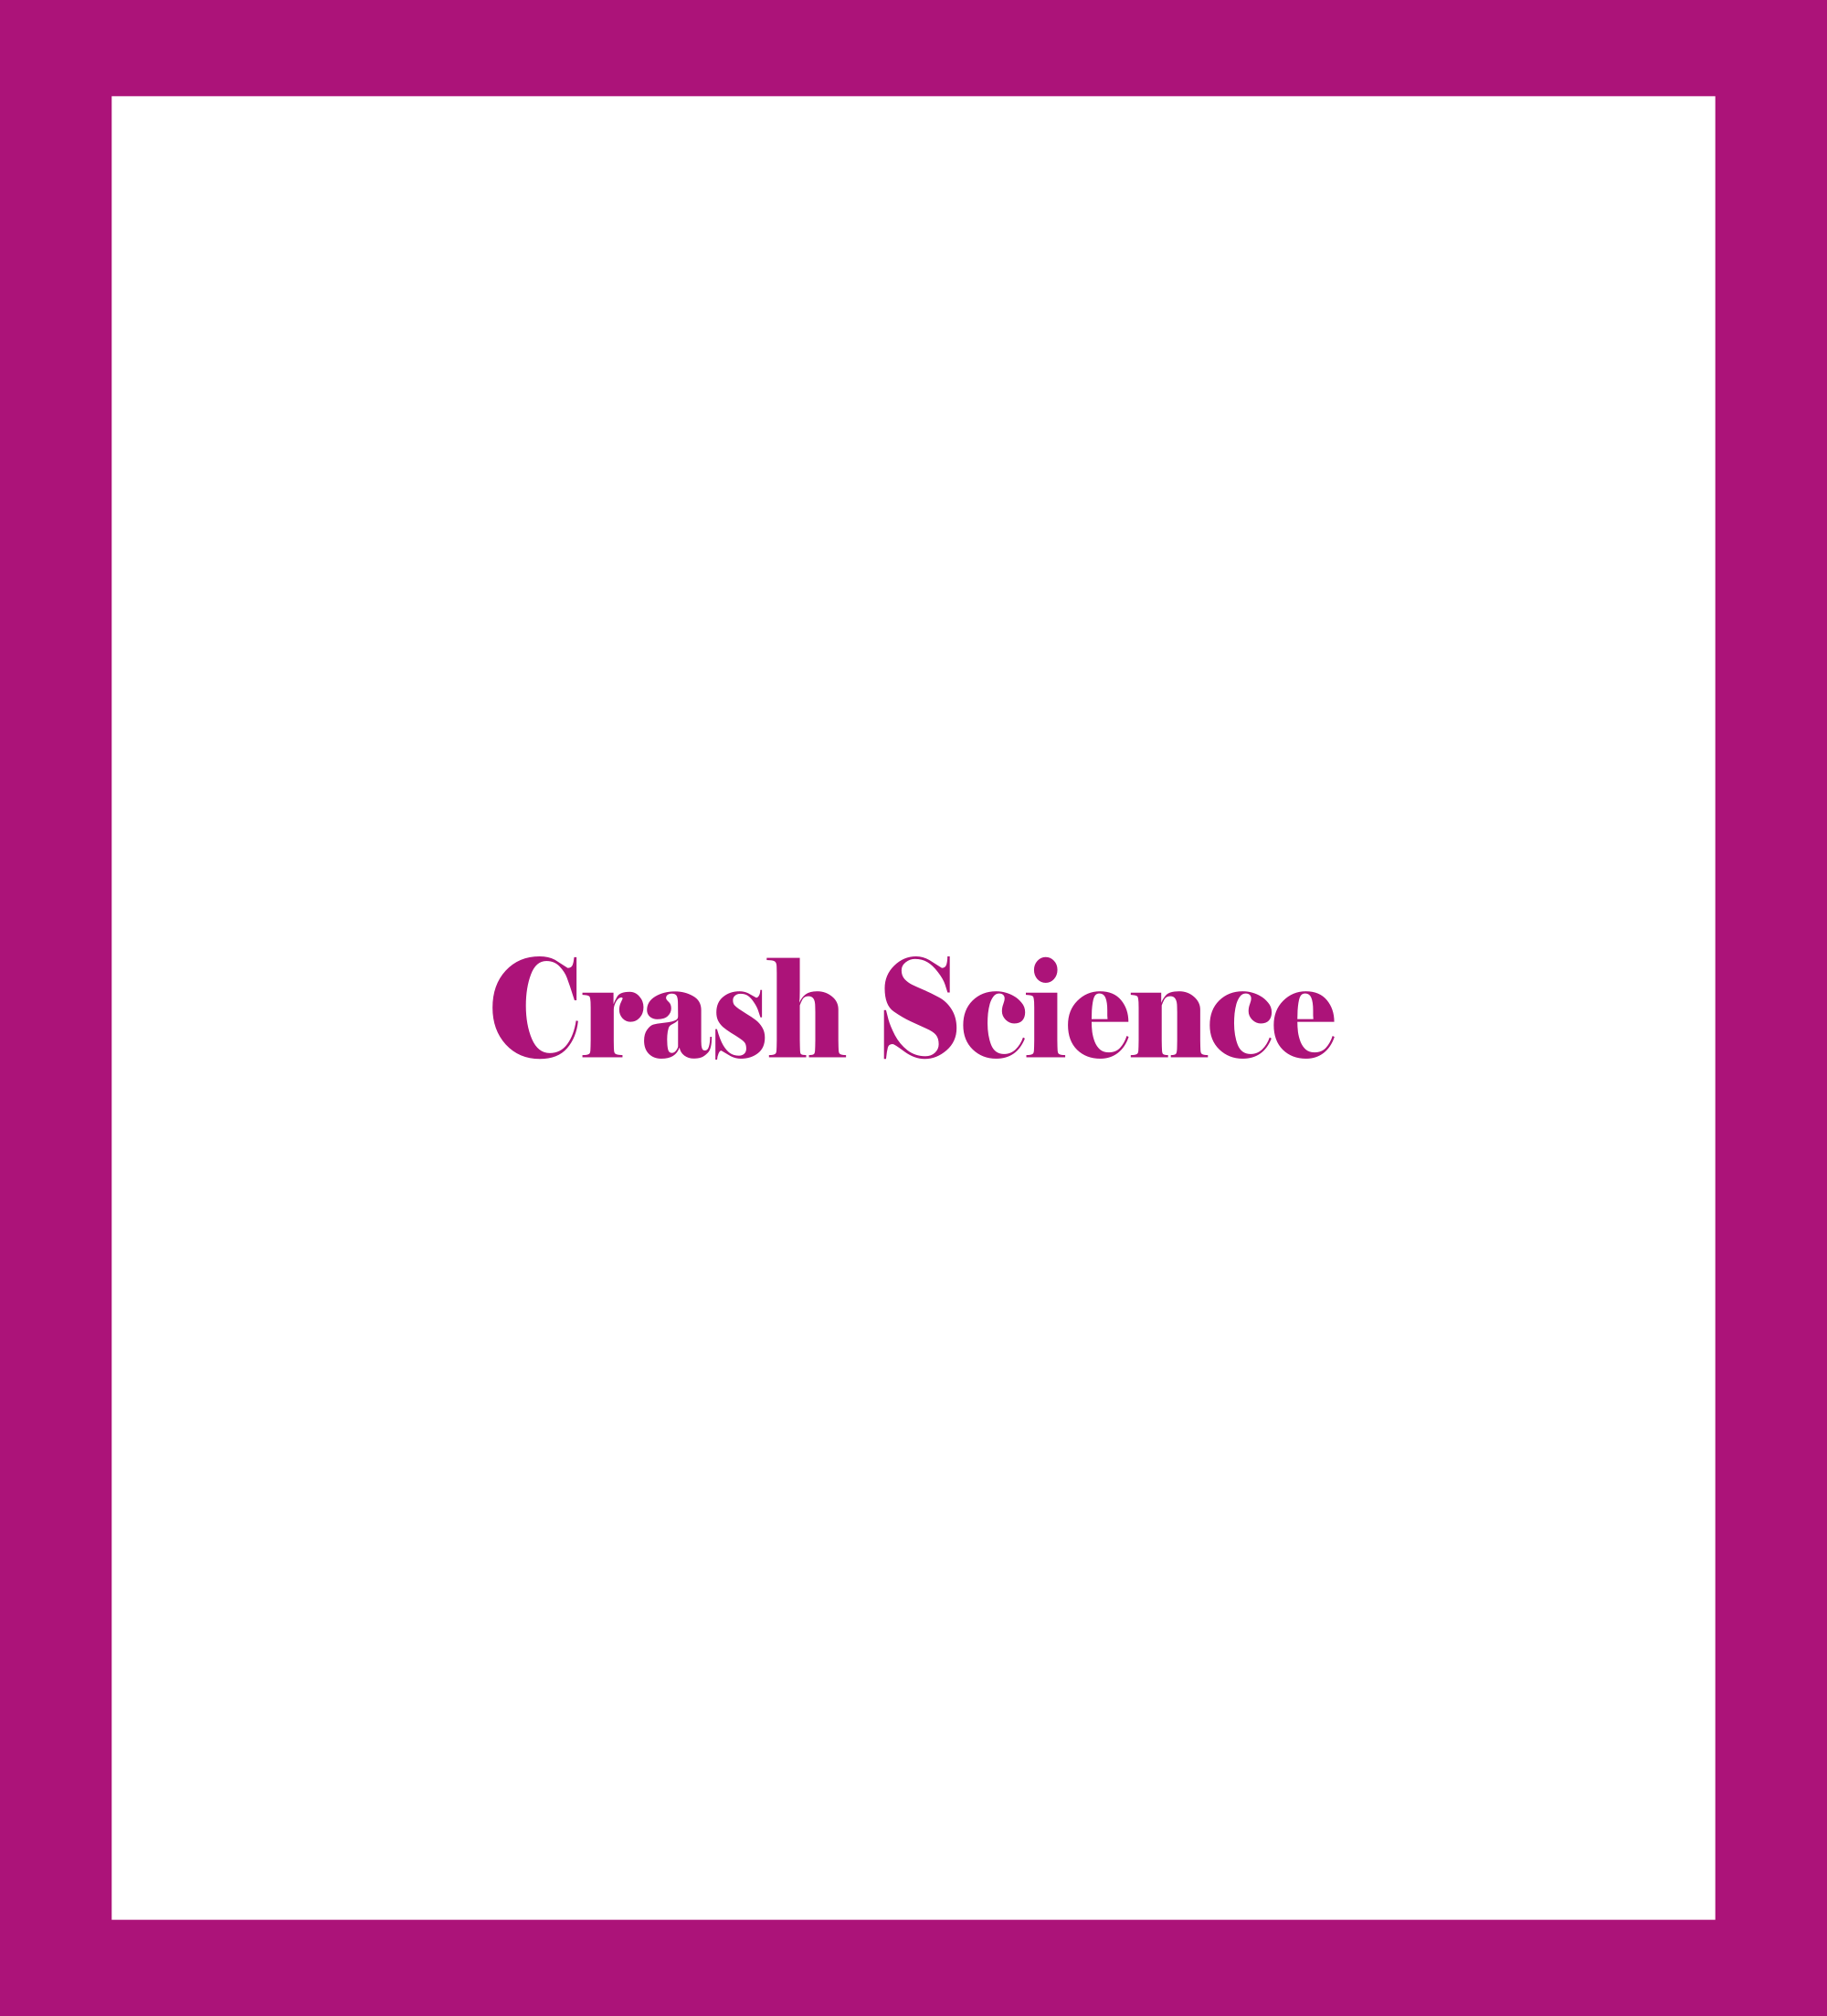 Crash Science